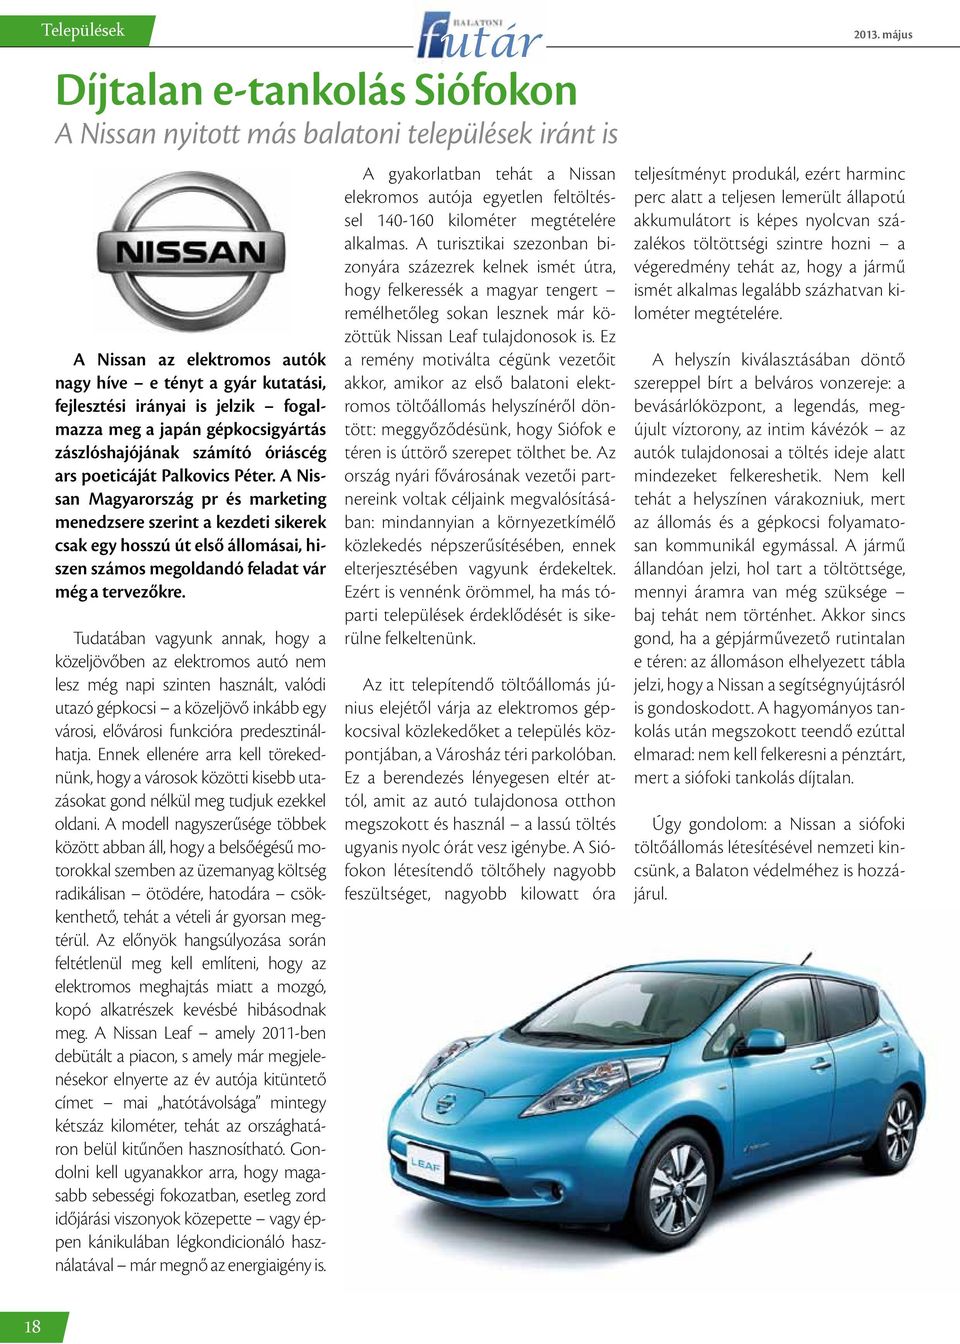 A Nissan Magyarország pr és marketing menedzsere szerint a kezdeti sikerek csak egy hosszú út első állomásai, hiszen számos megoldandó feladat vár még a tervezőkre.